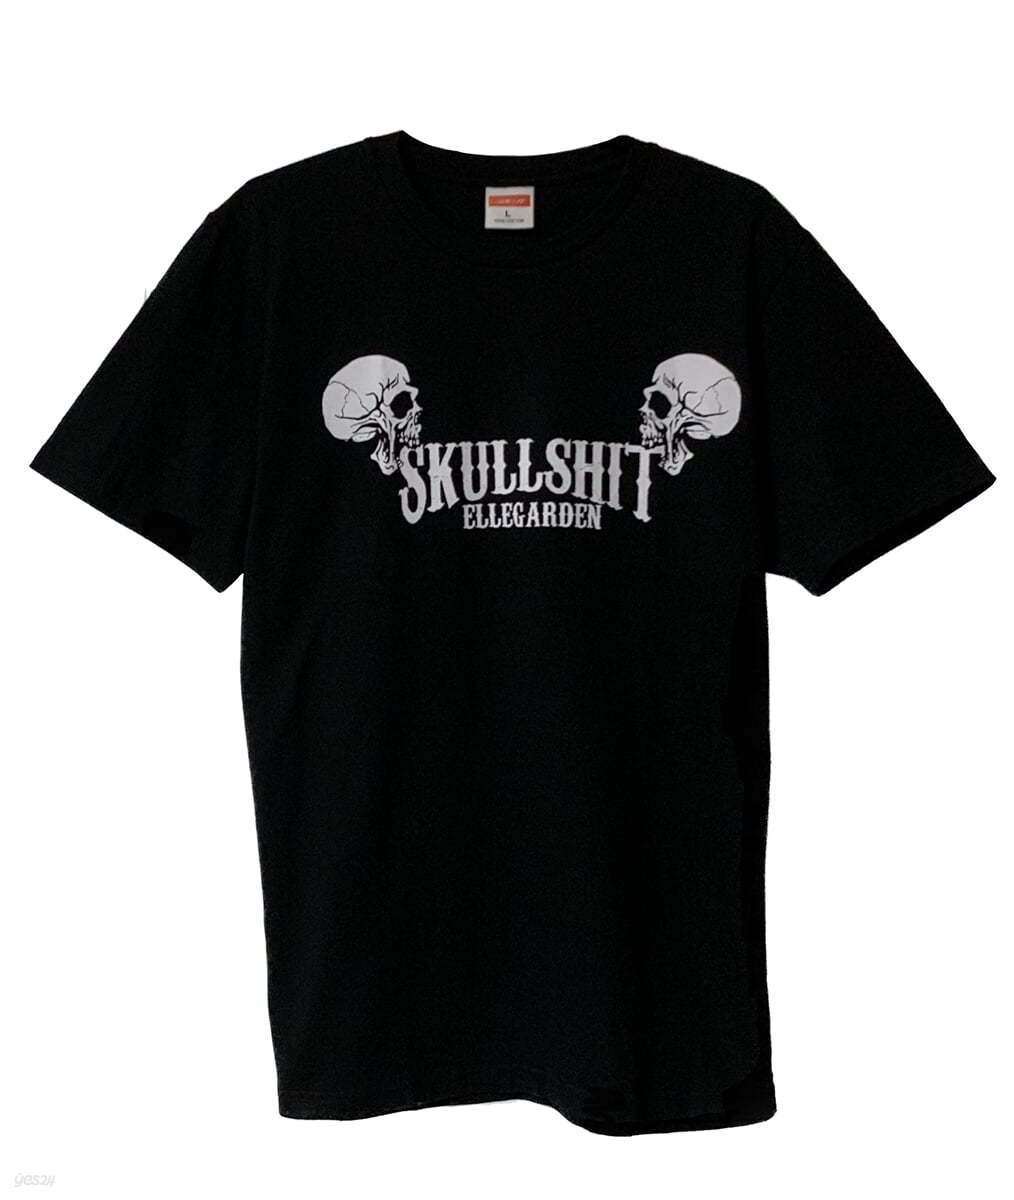 Ellegarden (엘르가든) - Tour Skullshit 티셔츠 [S사이즈]